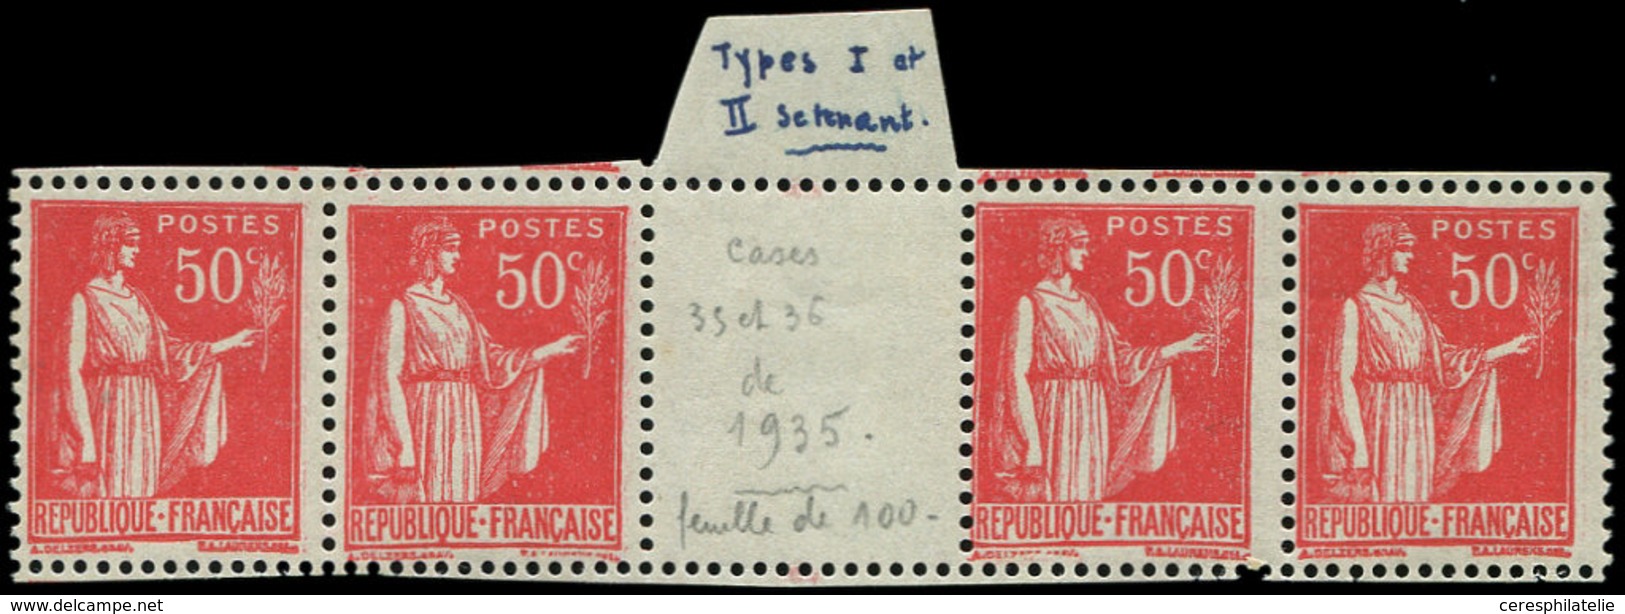 ** VARIETES - 283   Paix, 50c. Rose-rouge, BANDE De 4 Interp., 2 Ex. T IIA, RR Et TB - Unused Stamps